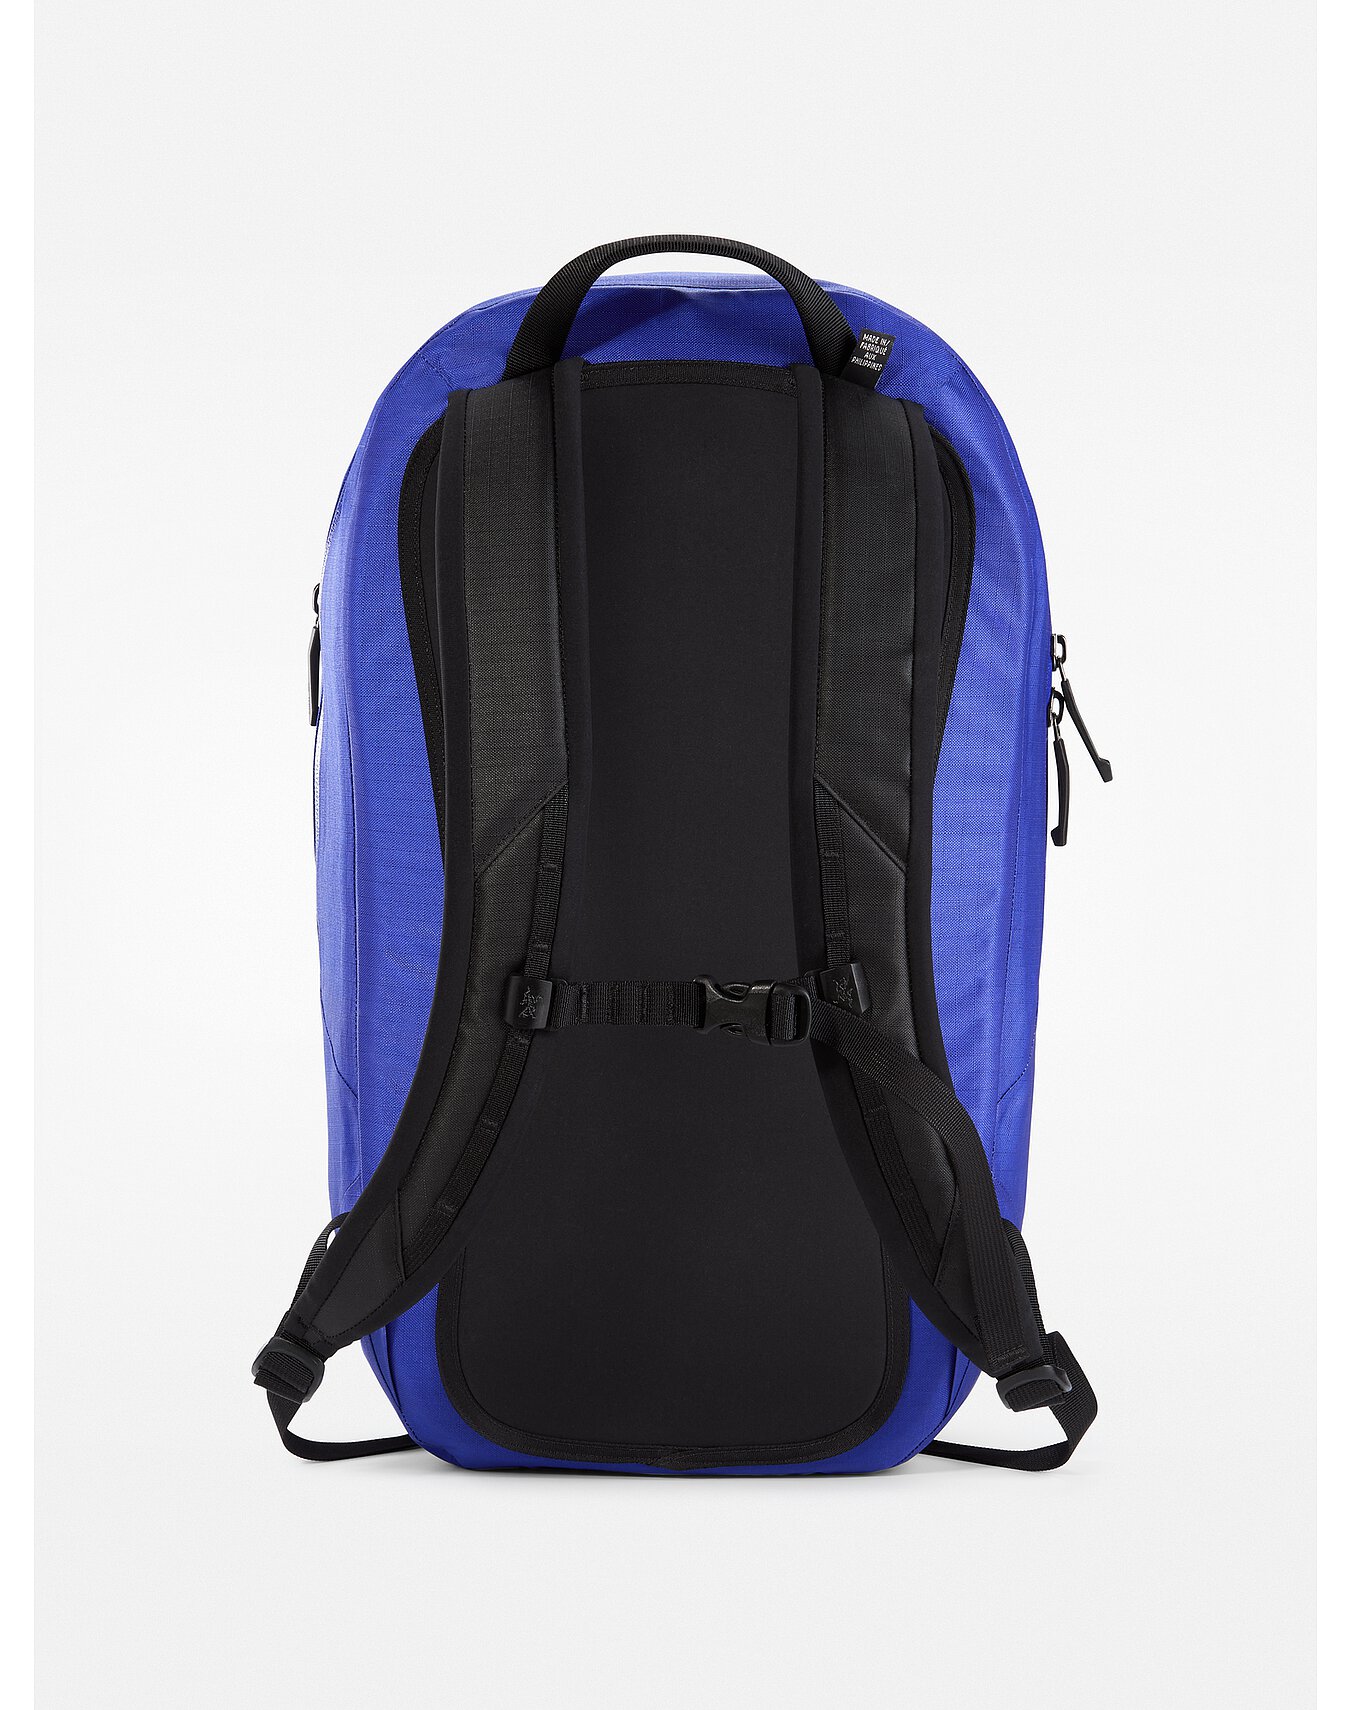 Granville 16 Zip Backpack | Arc'teryx Outlet